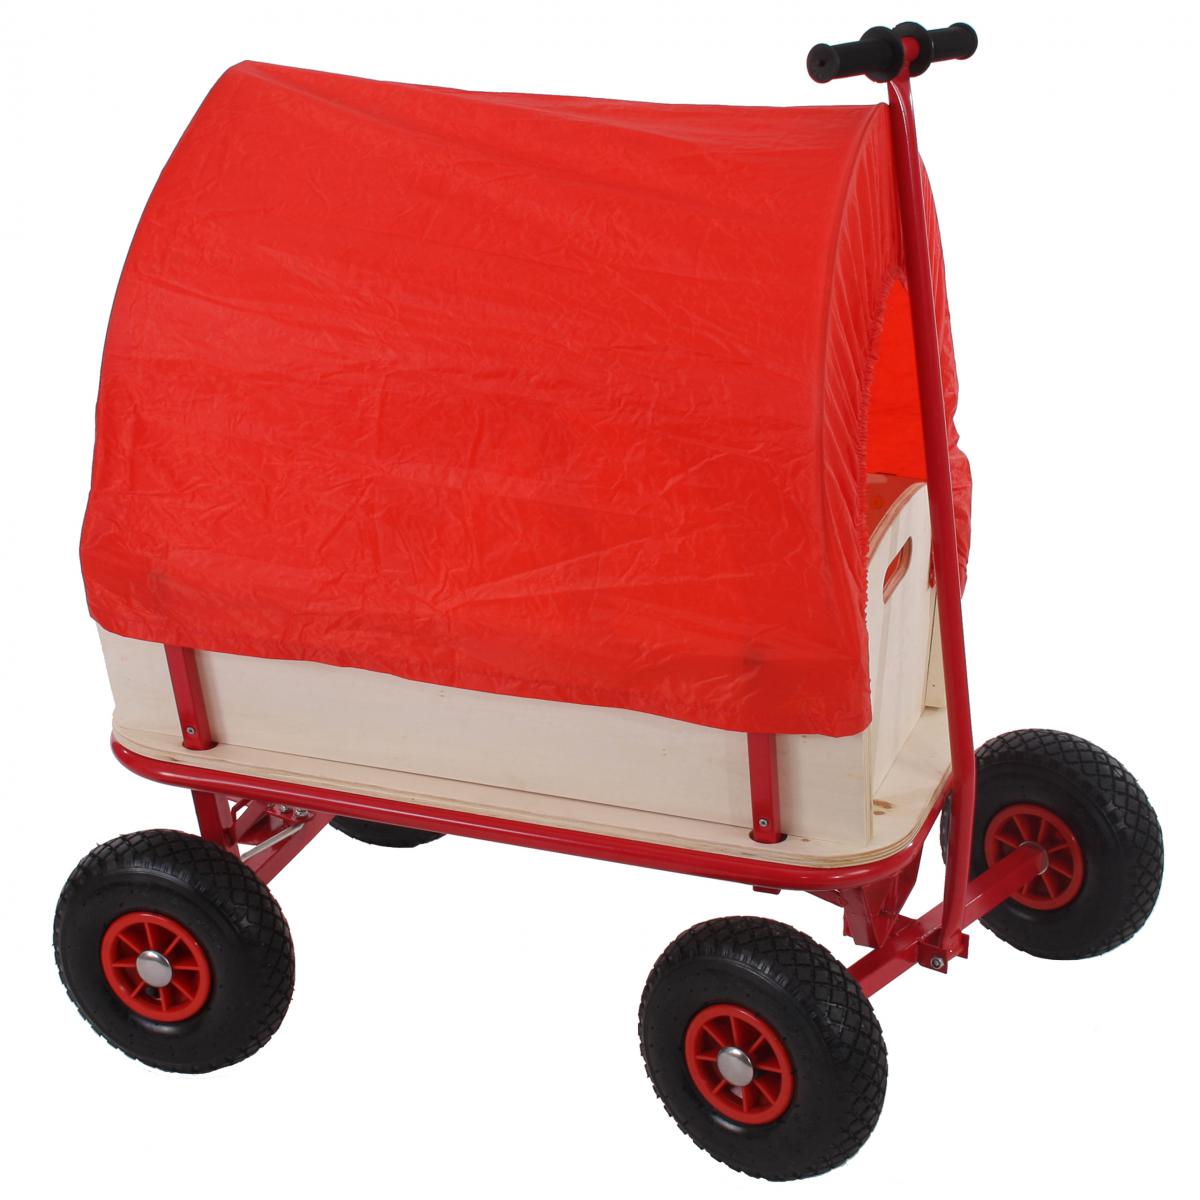 Mendler - Voiturette charrette à bras chariot, bois, 92x61cm, avec frein, bâche rouge - Véhicule à pédales